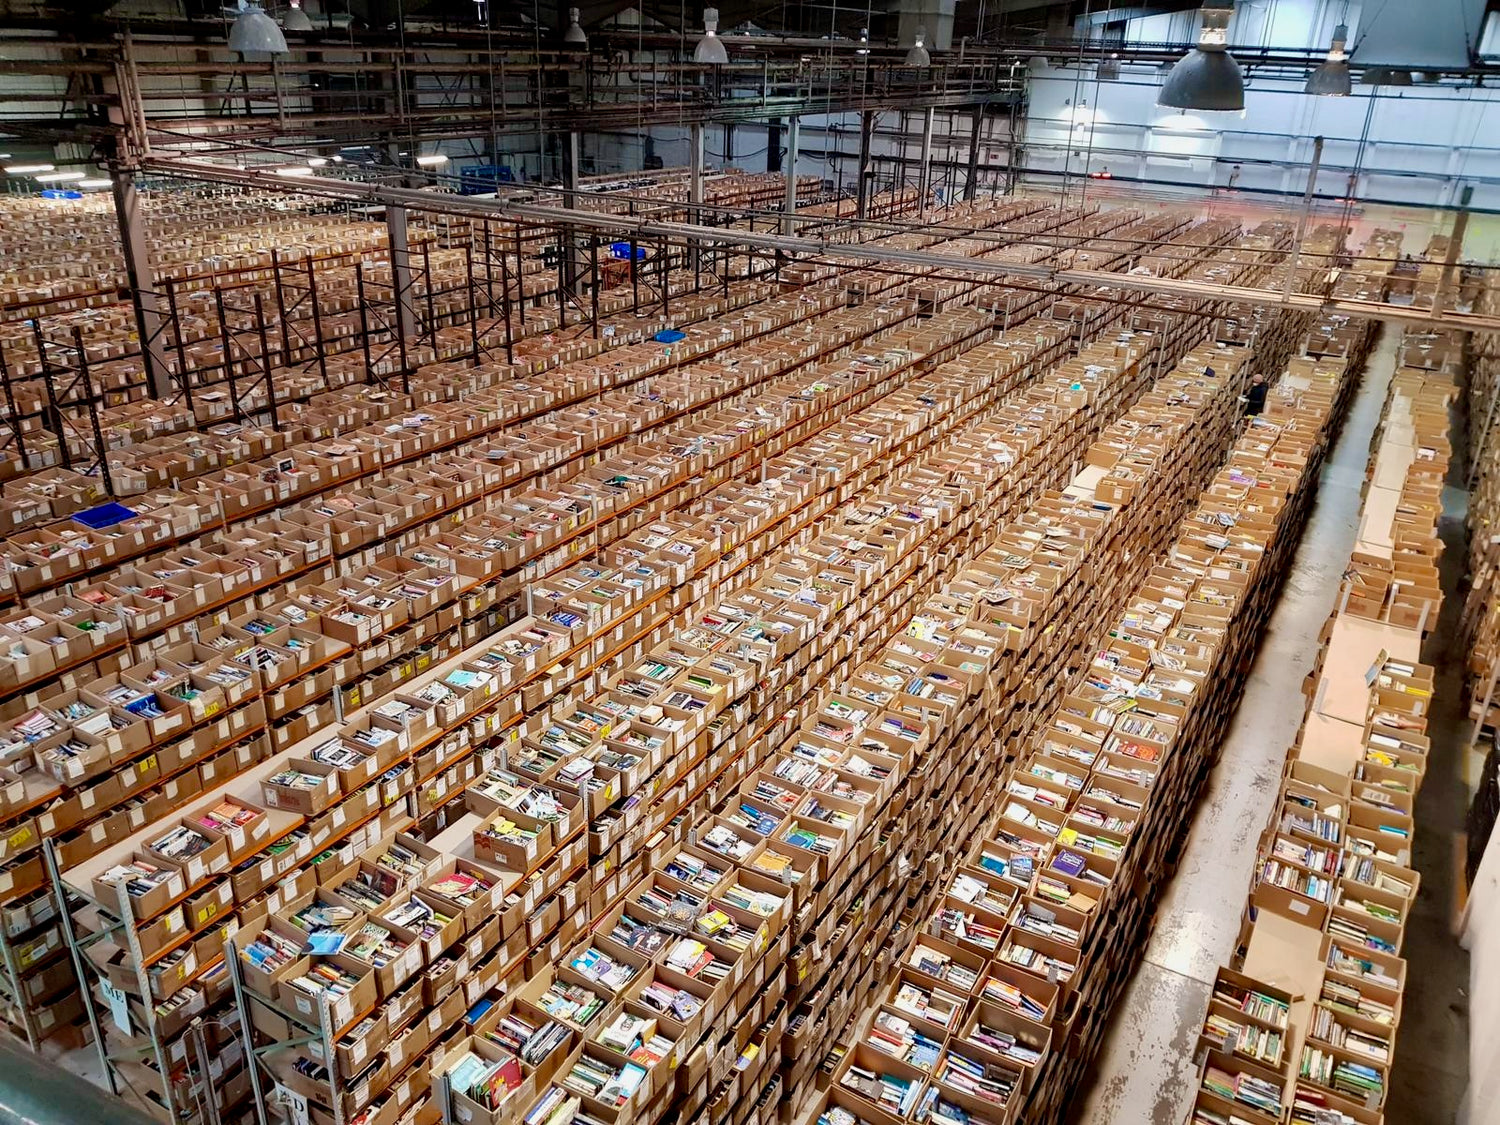 Warehouse full of books